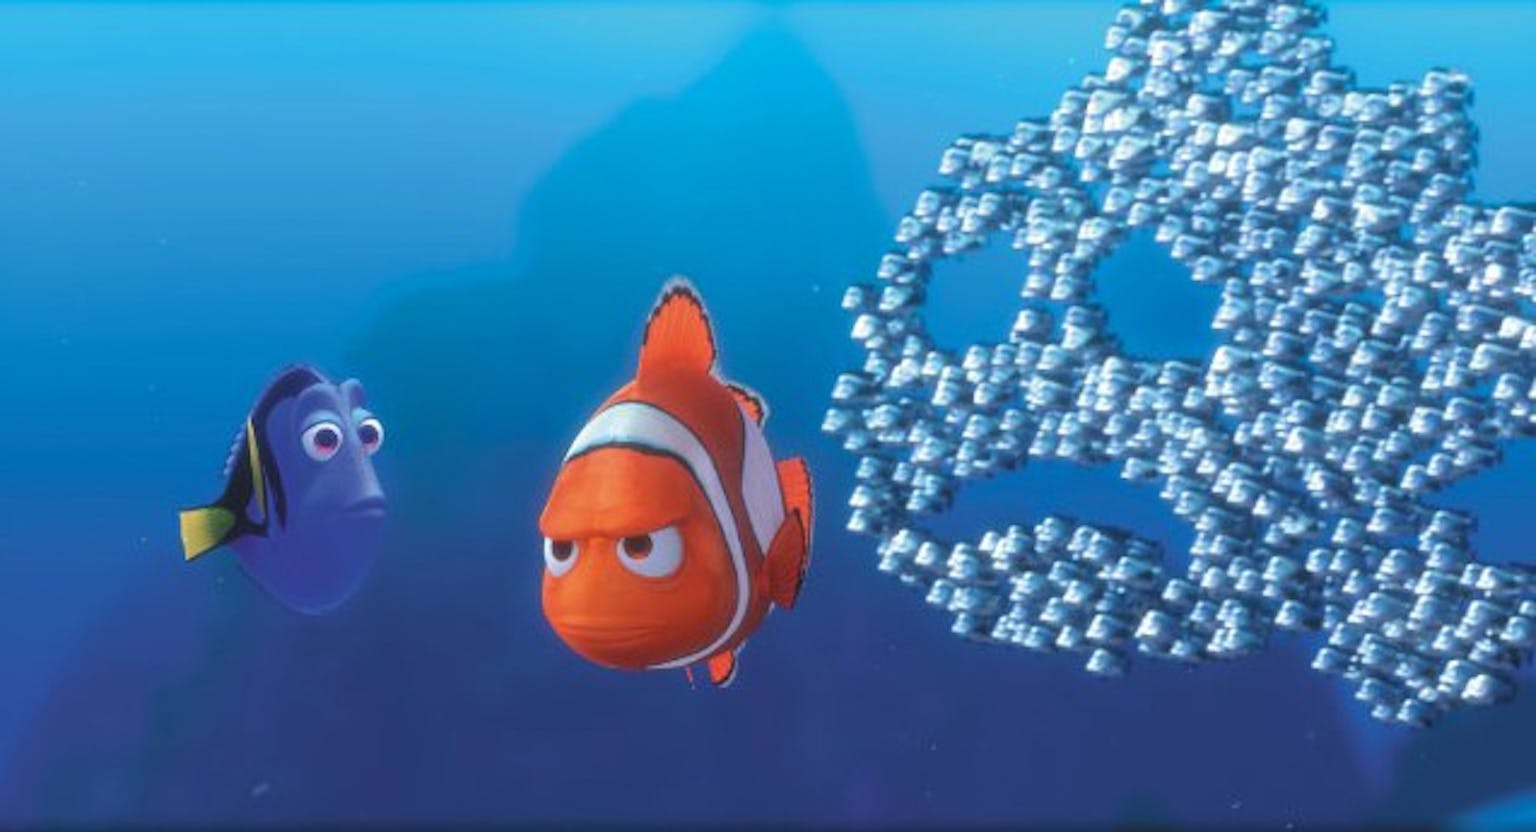 Nemo en Dory en een schaduw aan vissen op een blauwe achtergrond.